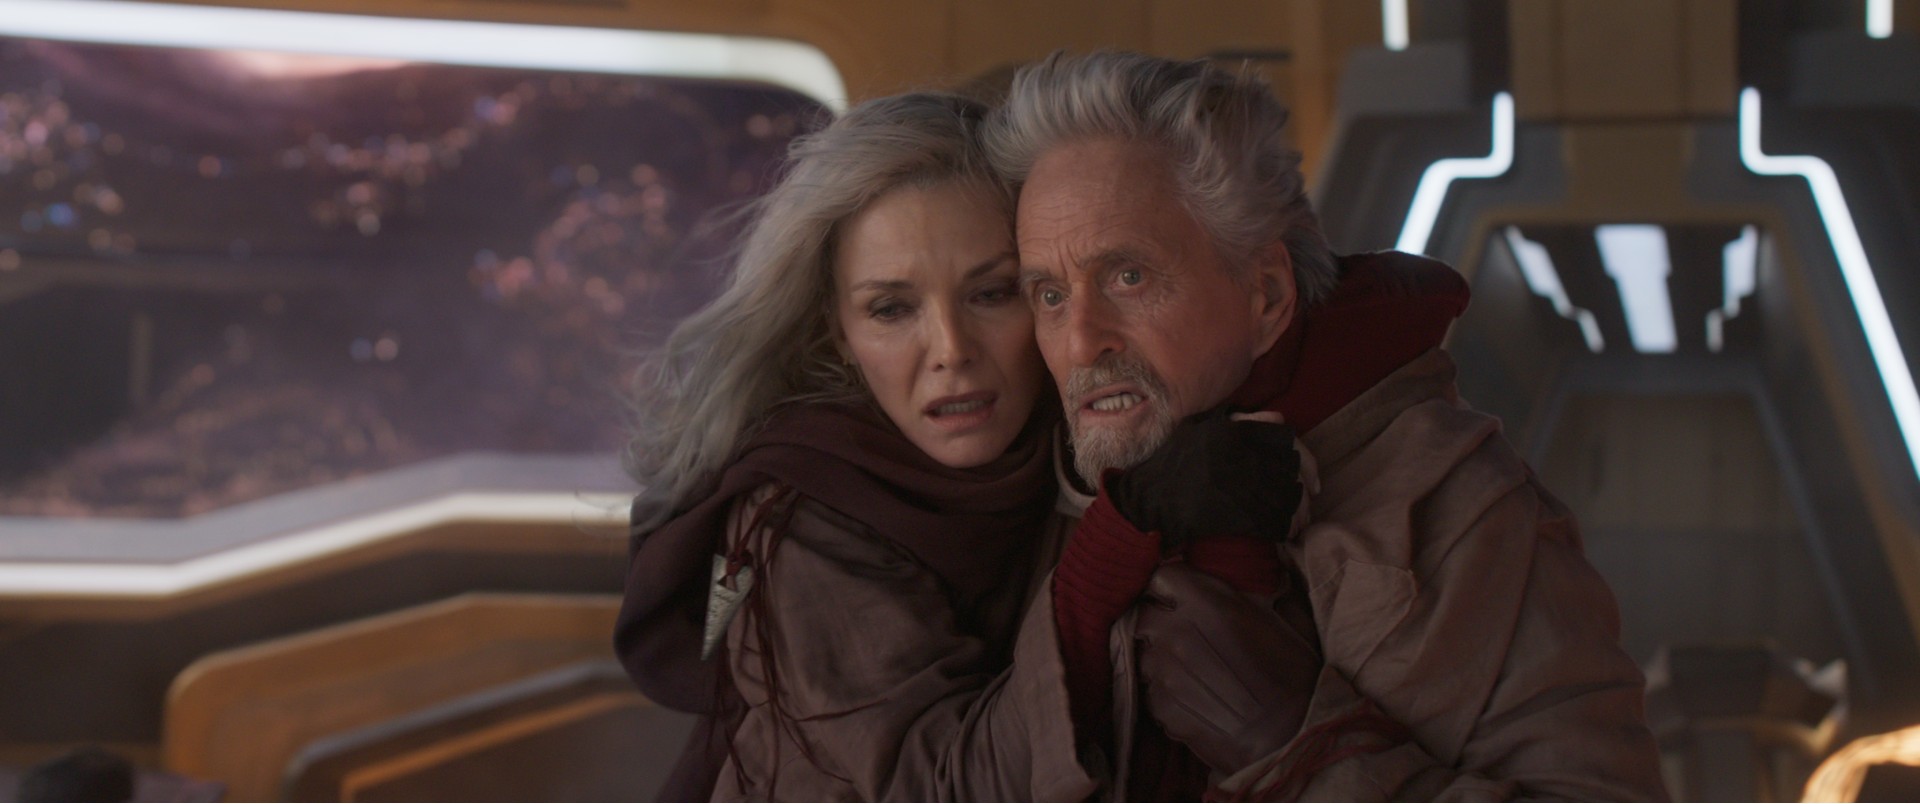 Michelle Pfeiffer e Michael Douglas se abraçam em uma cena de Homem-Formiga e a Vespa: Quantumania.